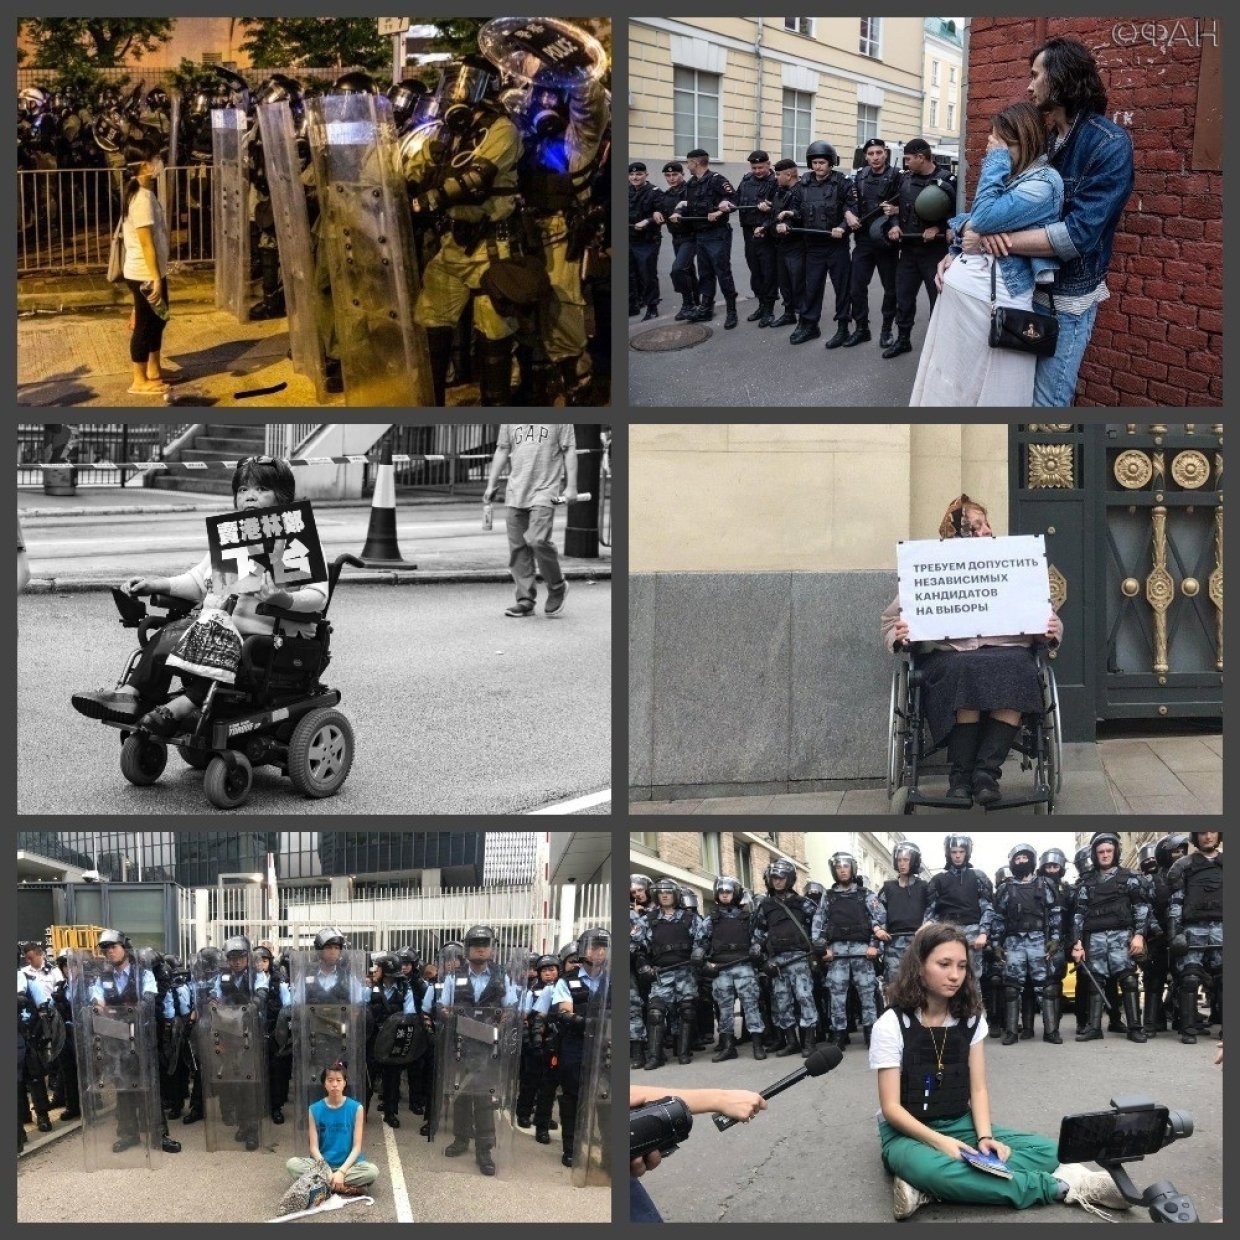 Протестные методички: как лекала Евромайдана всплыли в Москве и Гонконге